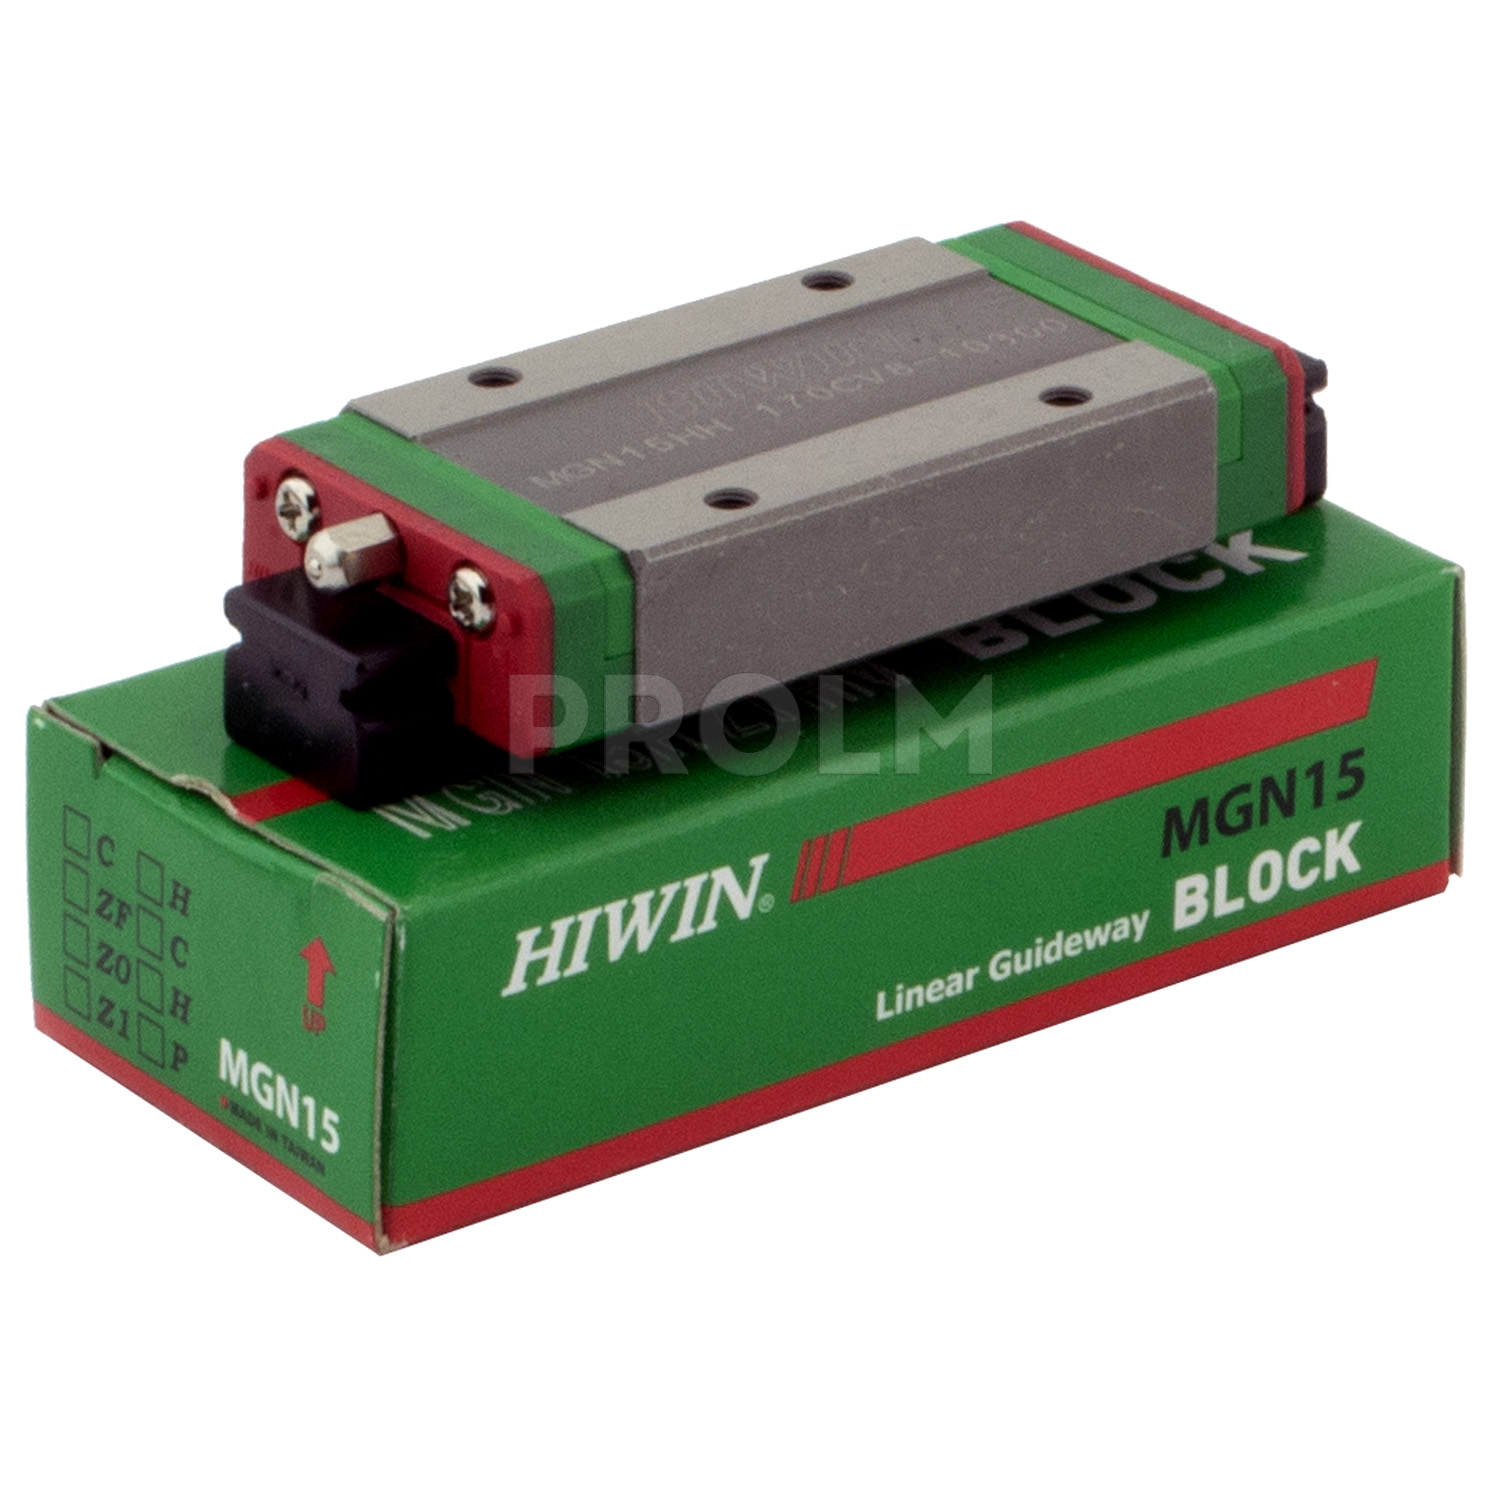 Блок системы линейного перемещения  HIWIN MGN15HZ0HM